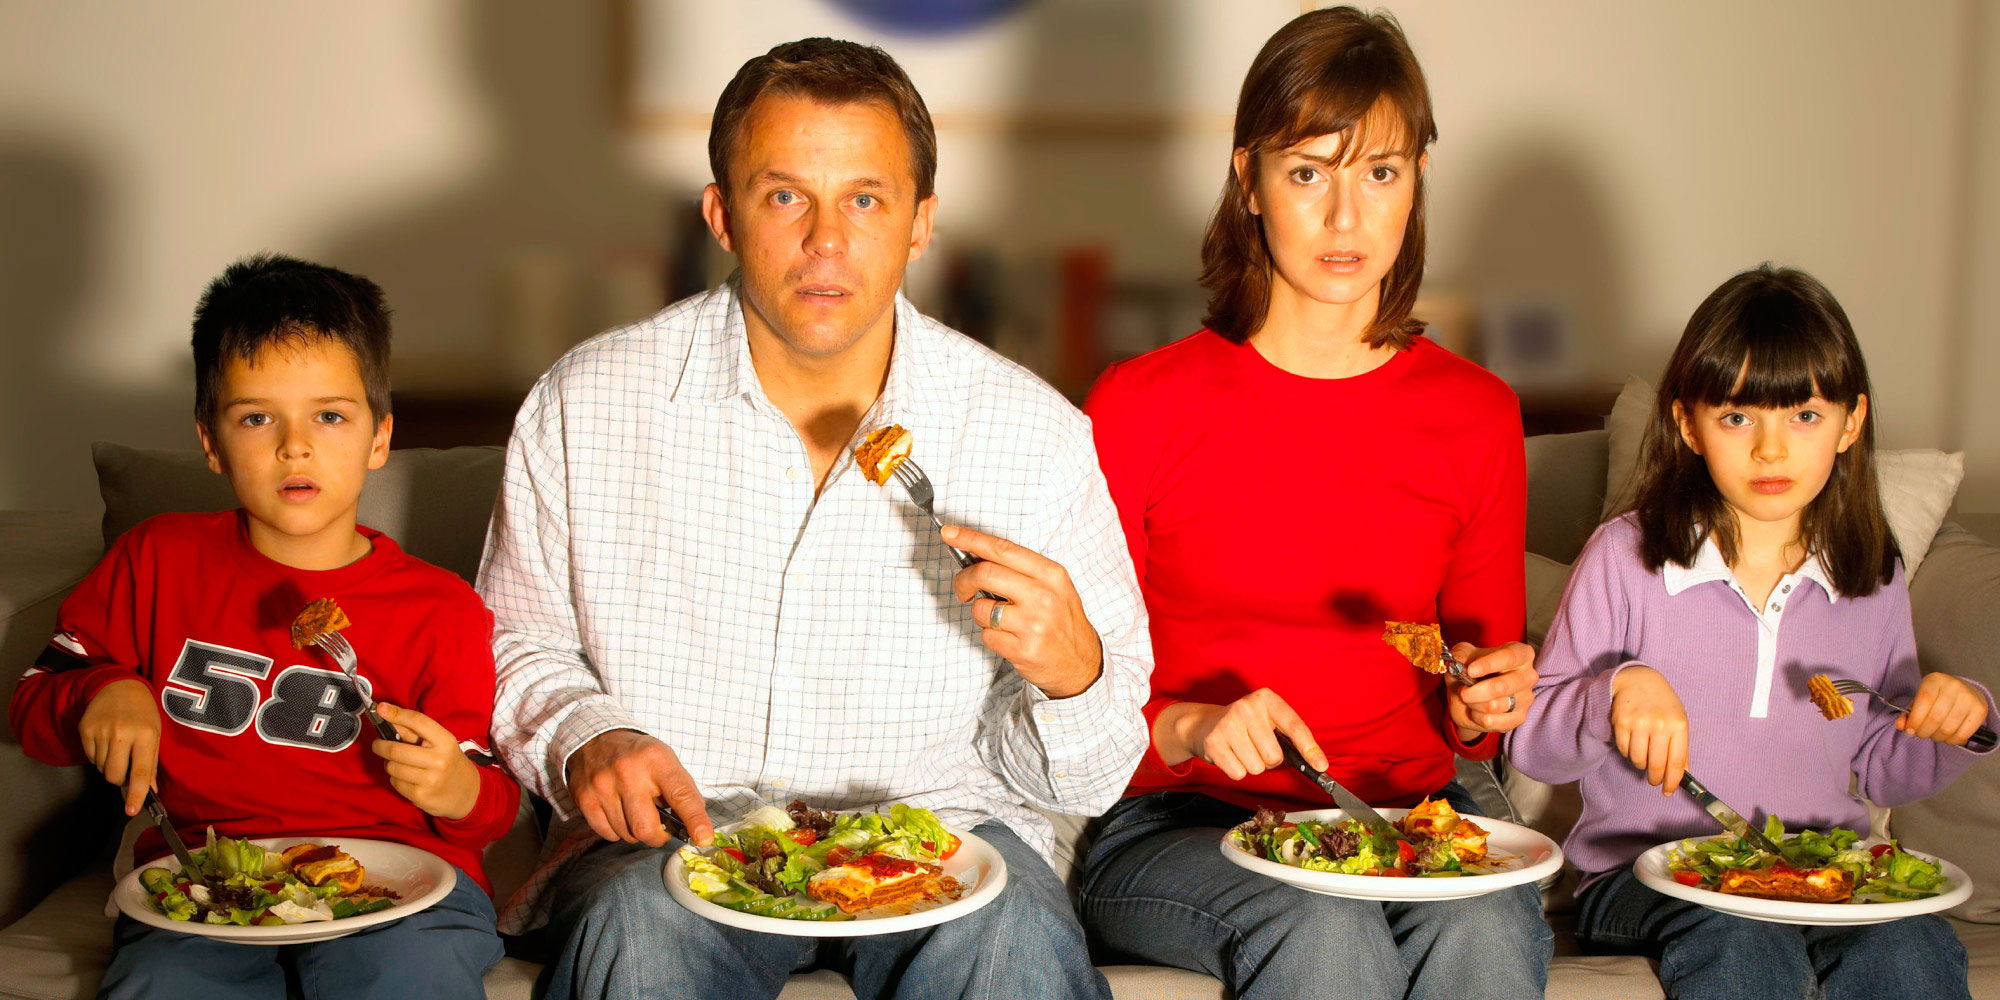 Comer assistindo televisão atrapalha a refeição? Verdade ou Mito?